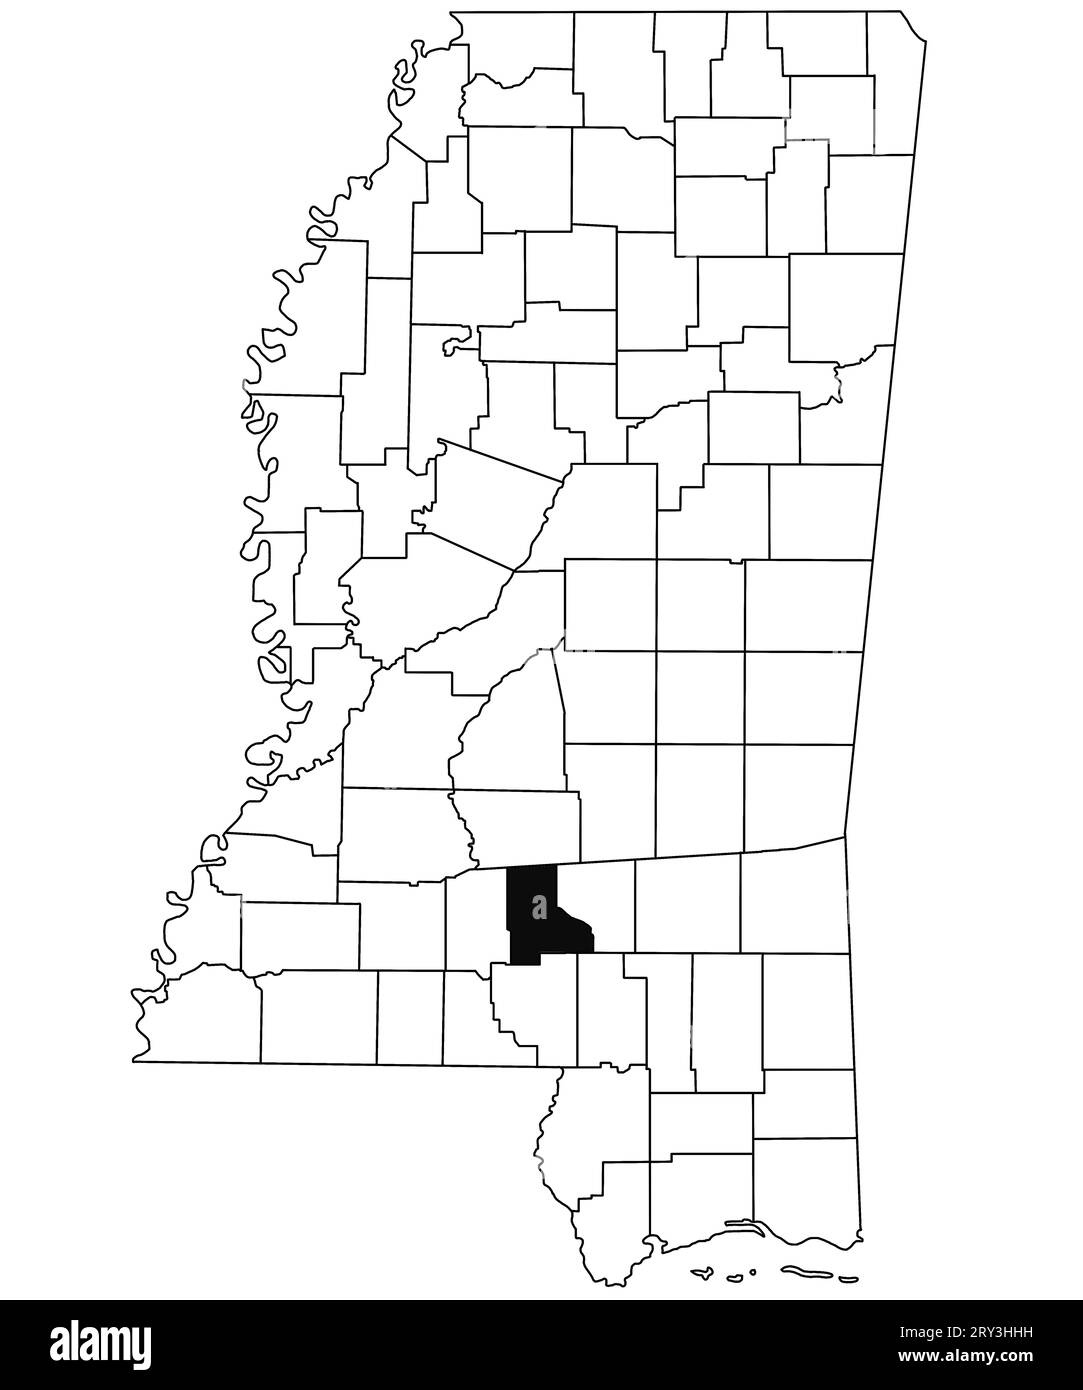 Mapa del condado de Jefferson davis en el estado de Mississippi sobre fondo blanco. Mapa del condado único resaltado por color negro en el mapa de Mississippi. Estados Unidos Foto de stock